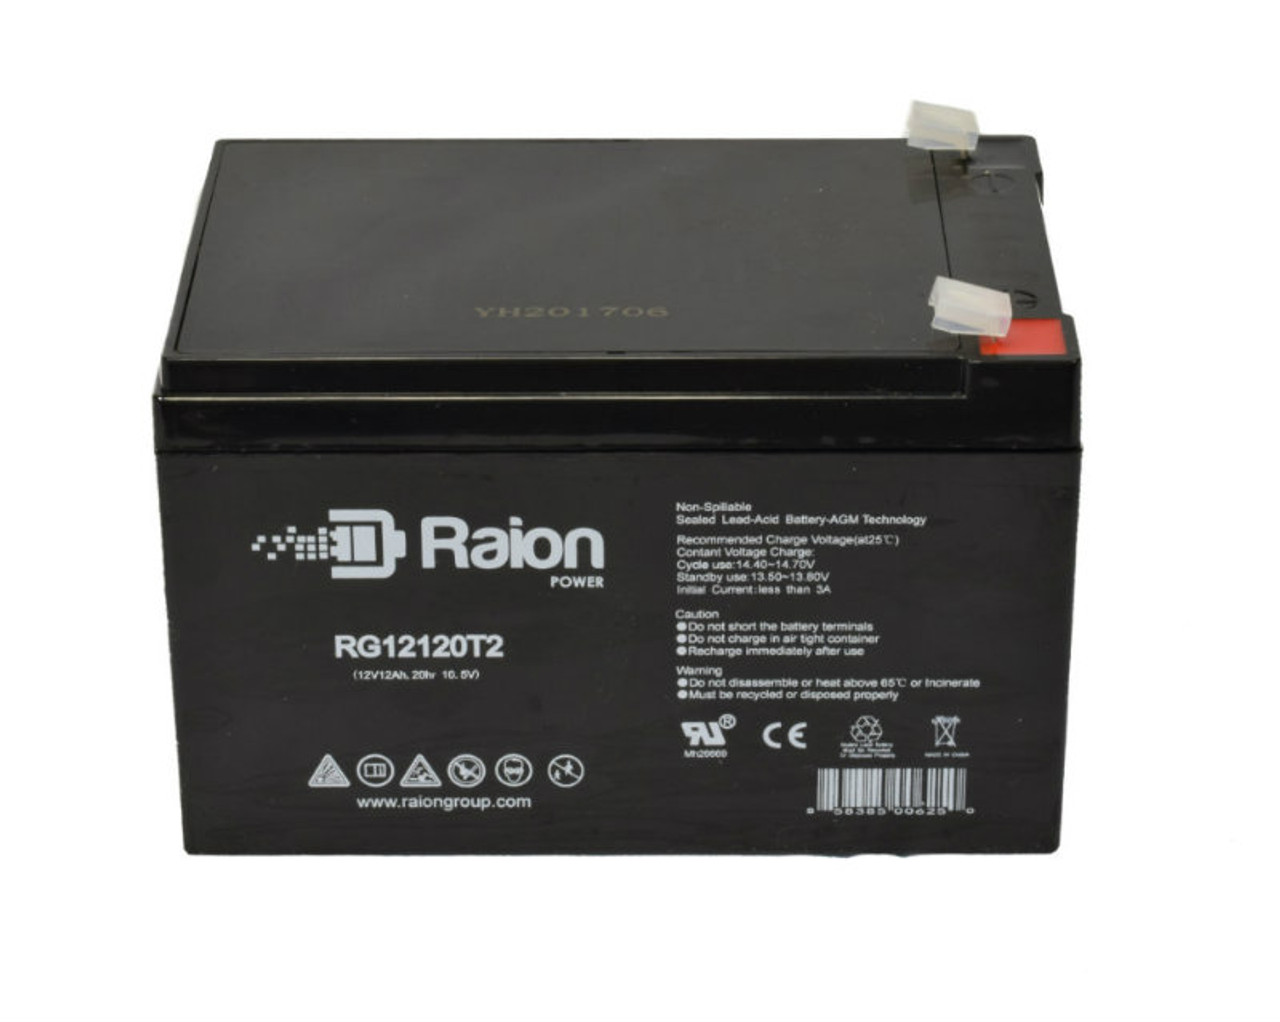 Raion Power RG12120T2 SLA Battery for Altronix AL602UL2ADA